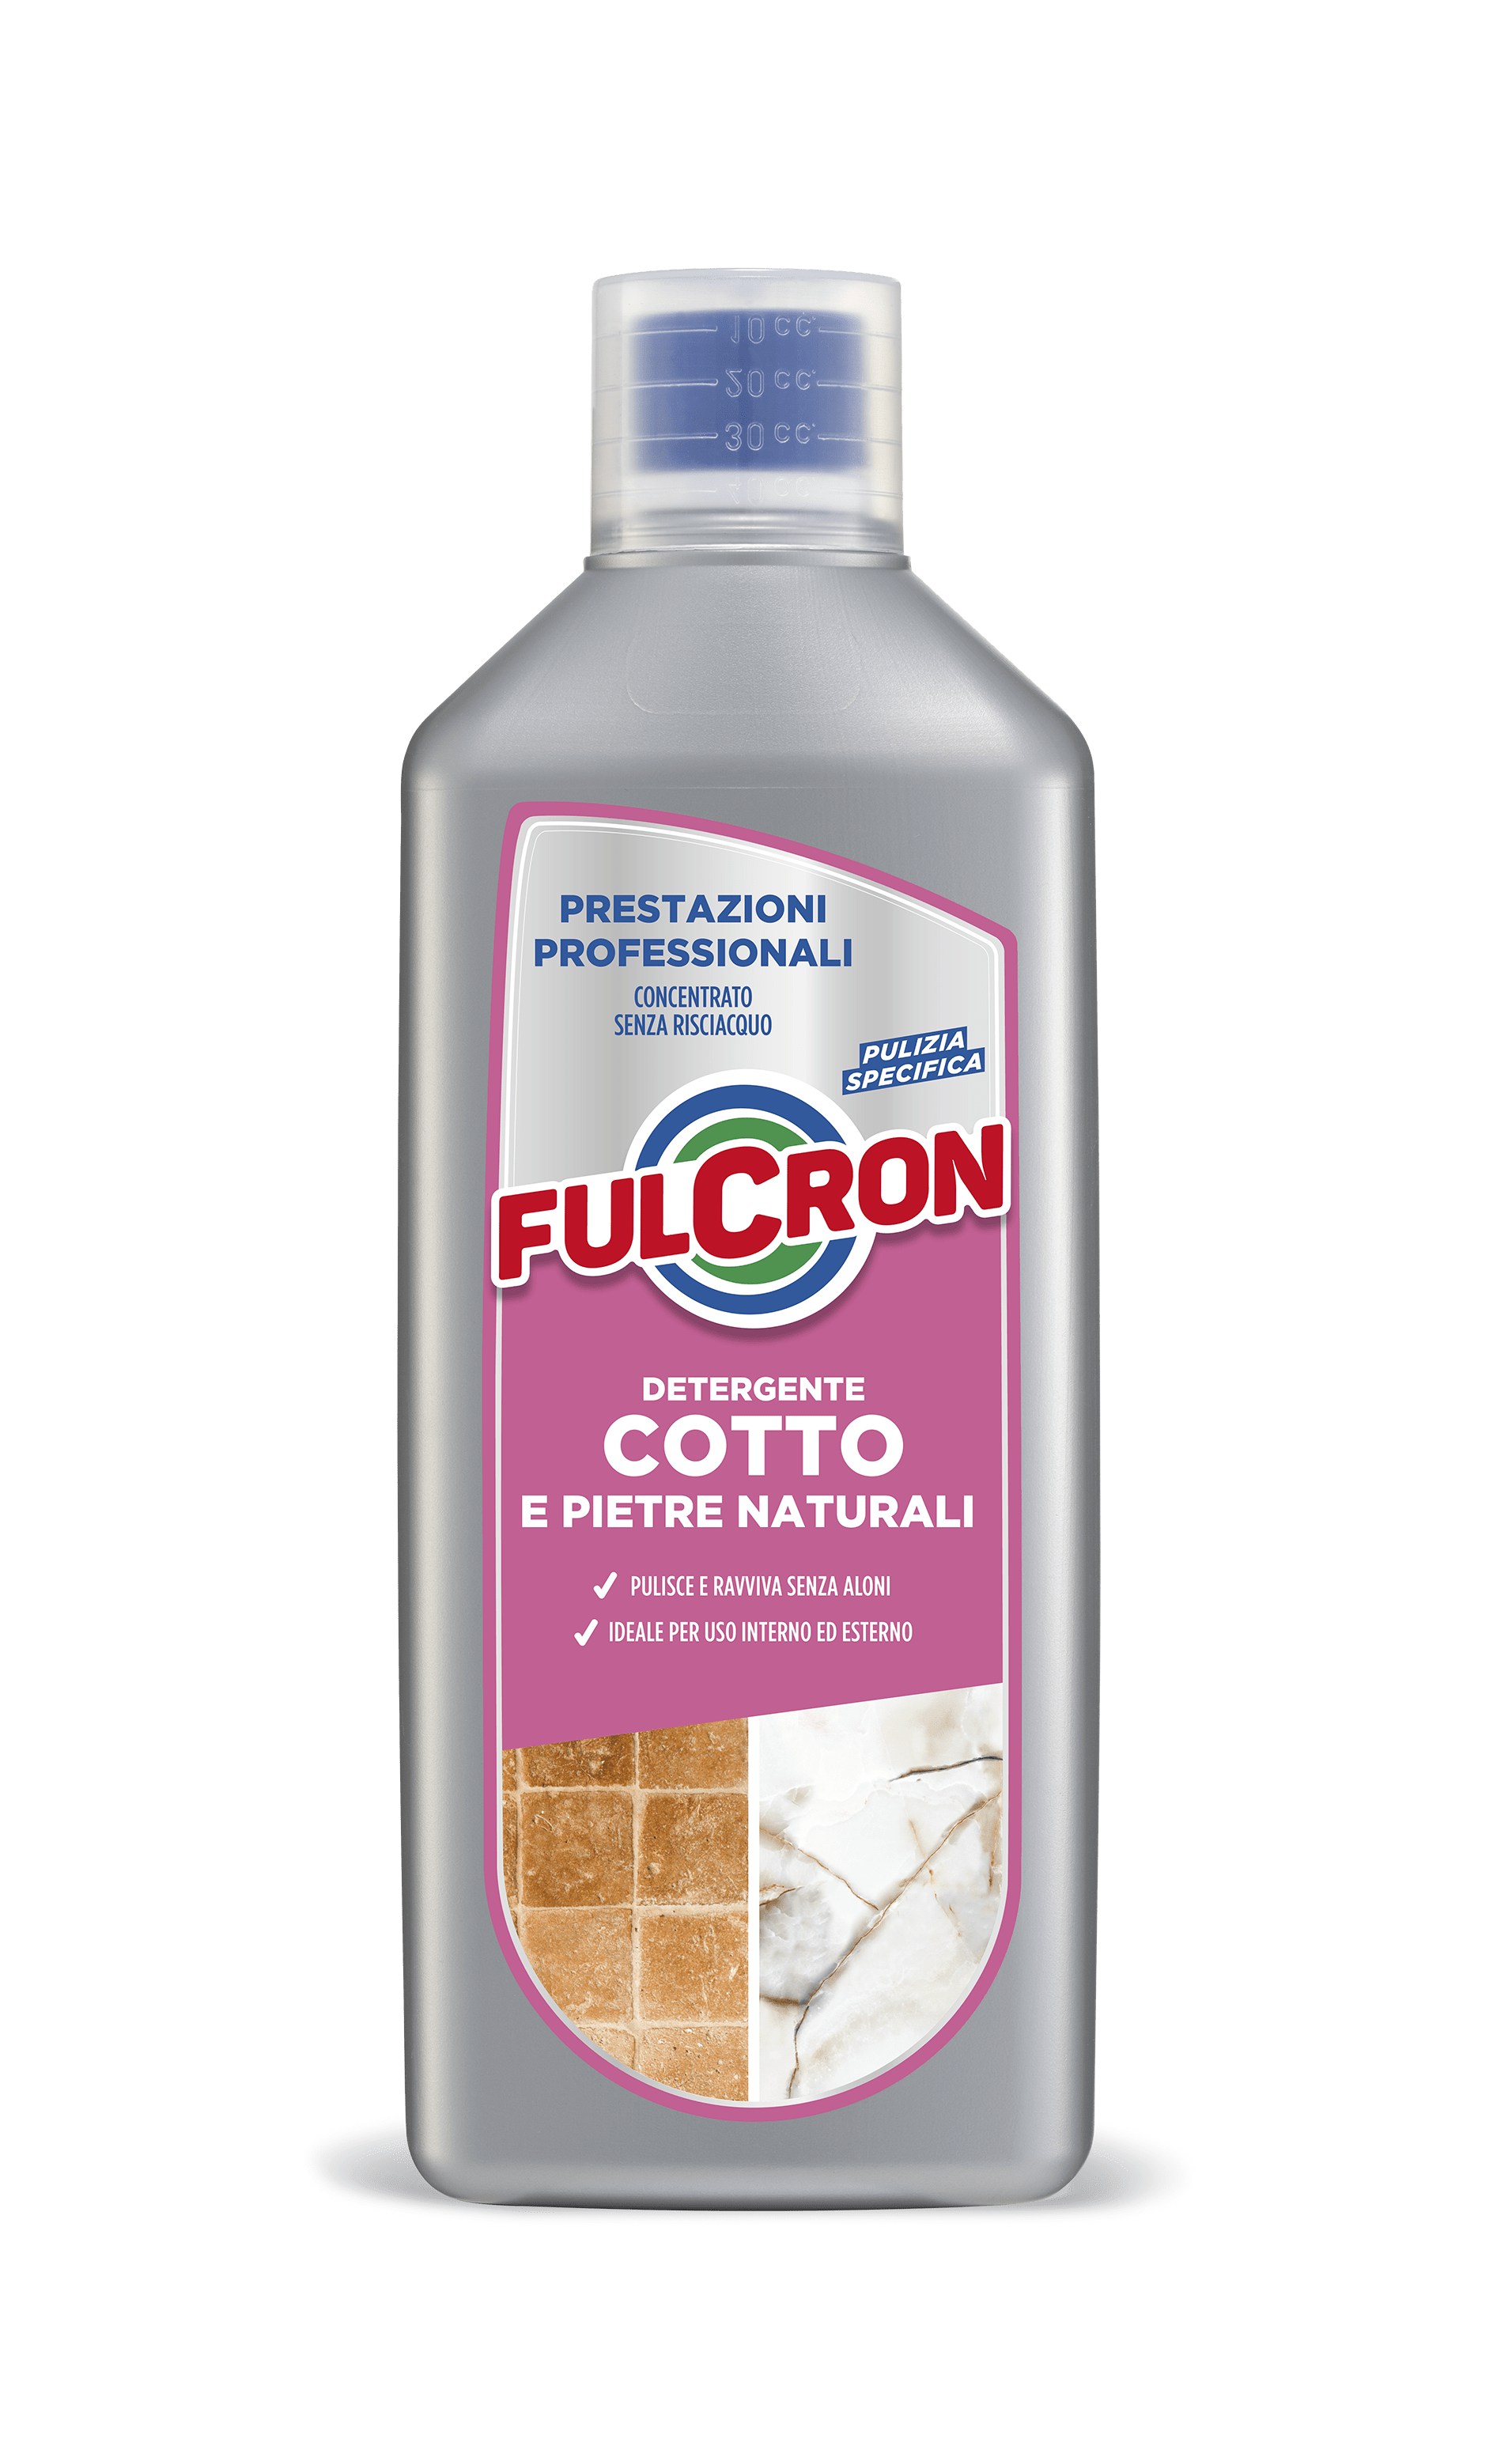 2593- Fulcron detergente cotto e pietre naturali 1lt